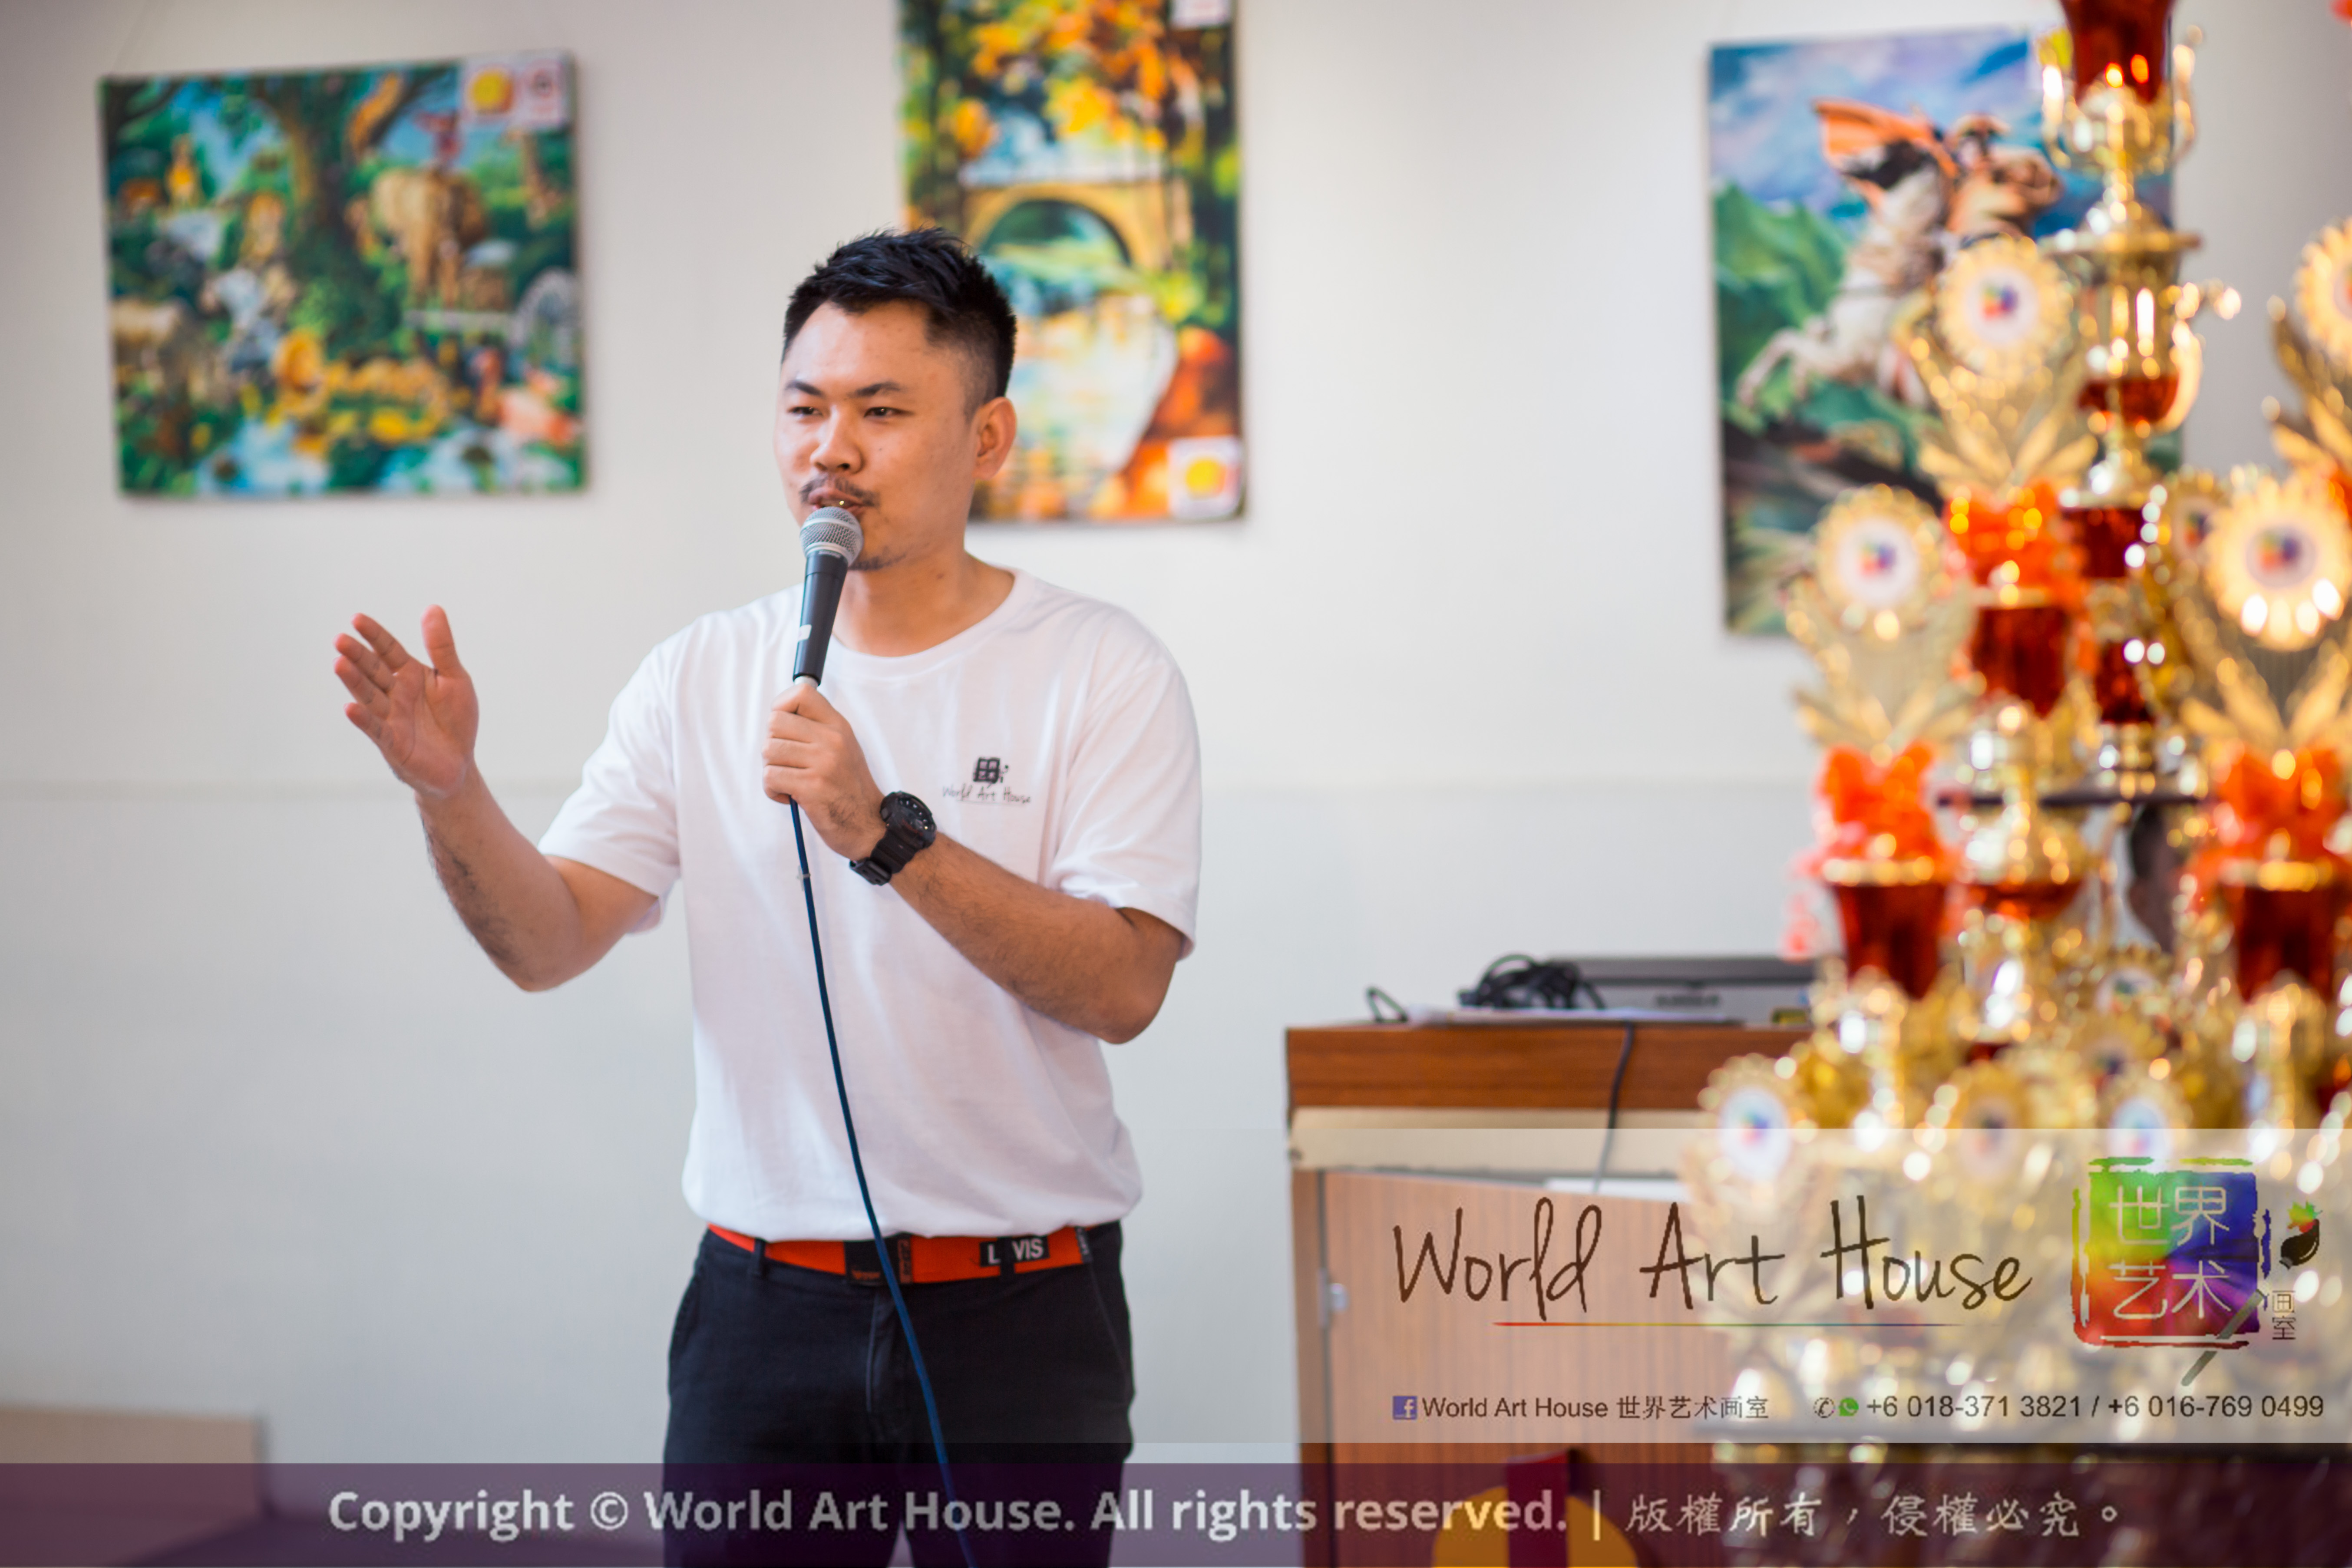 马来西亚 哥打白沙罗 八打灵再也 吉隆坡 雪兰莪 金犬报喜迎旺年 创意填色比赛 World Art House 世界艺术画室 及 1 Utama Shopping 金爺爺 JinYeYe Effye Media A014